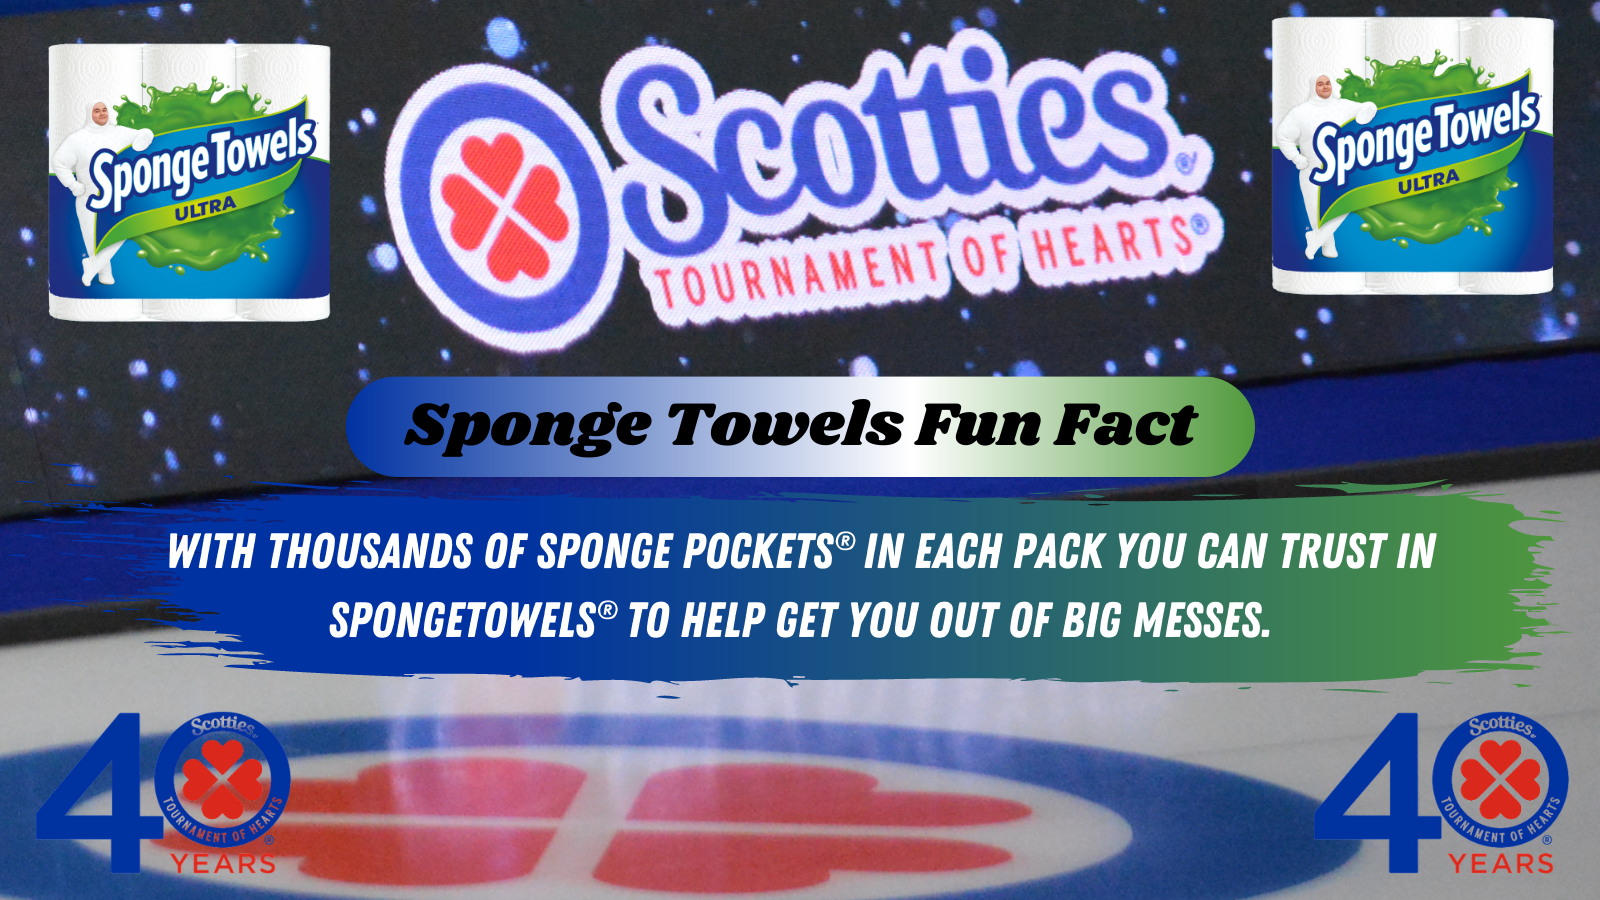 Sponge Towels Fun Fact